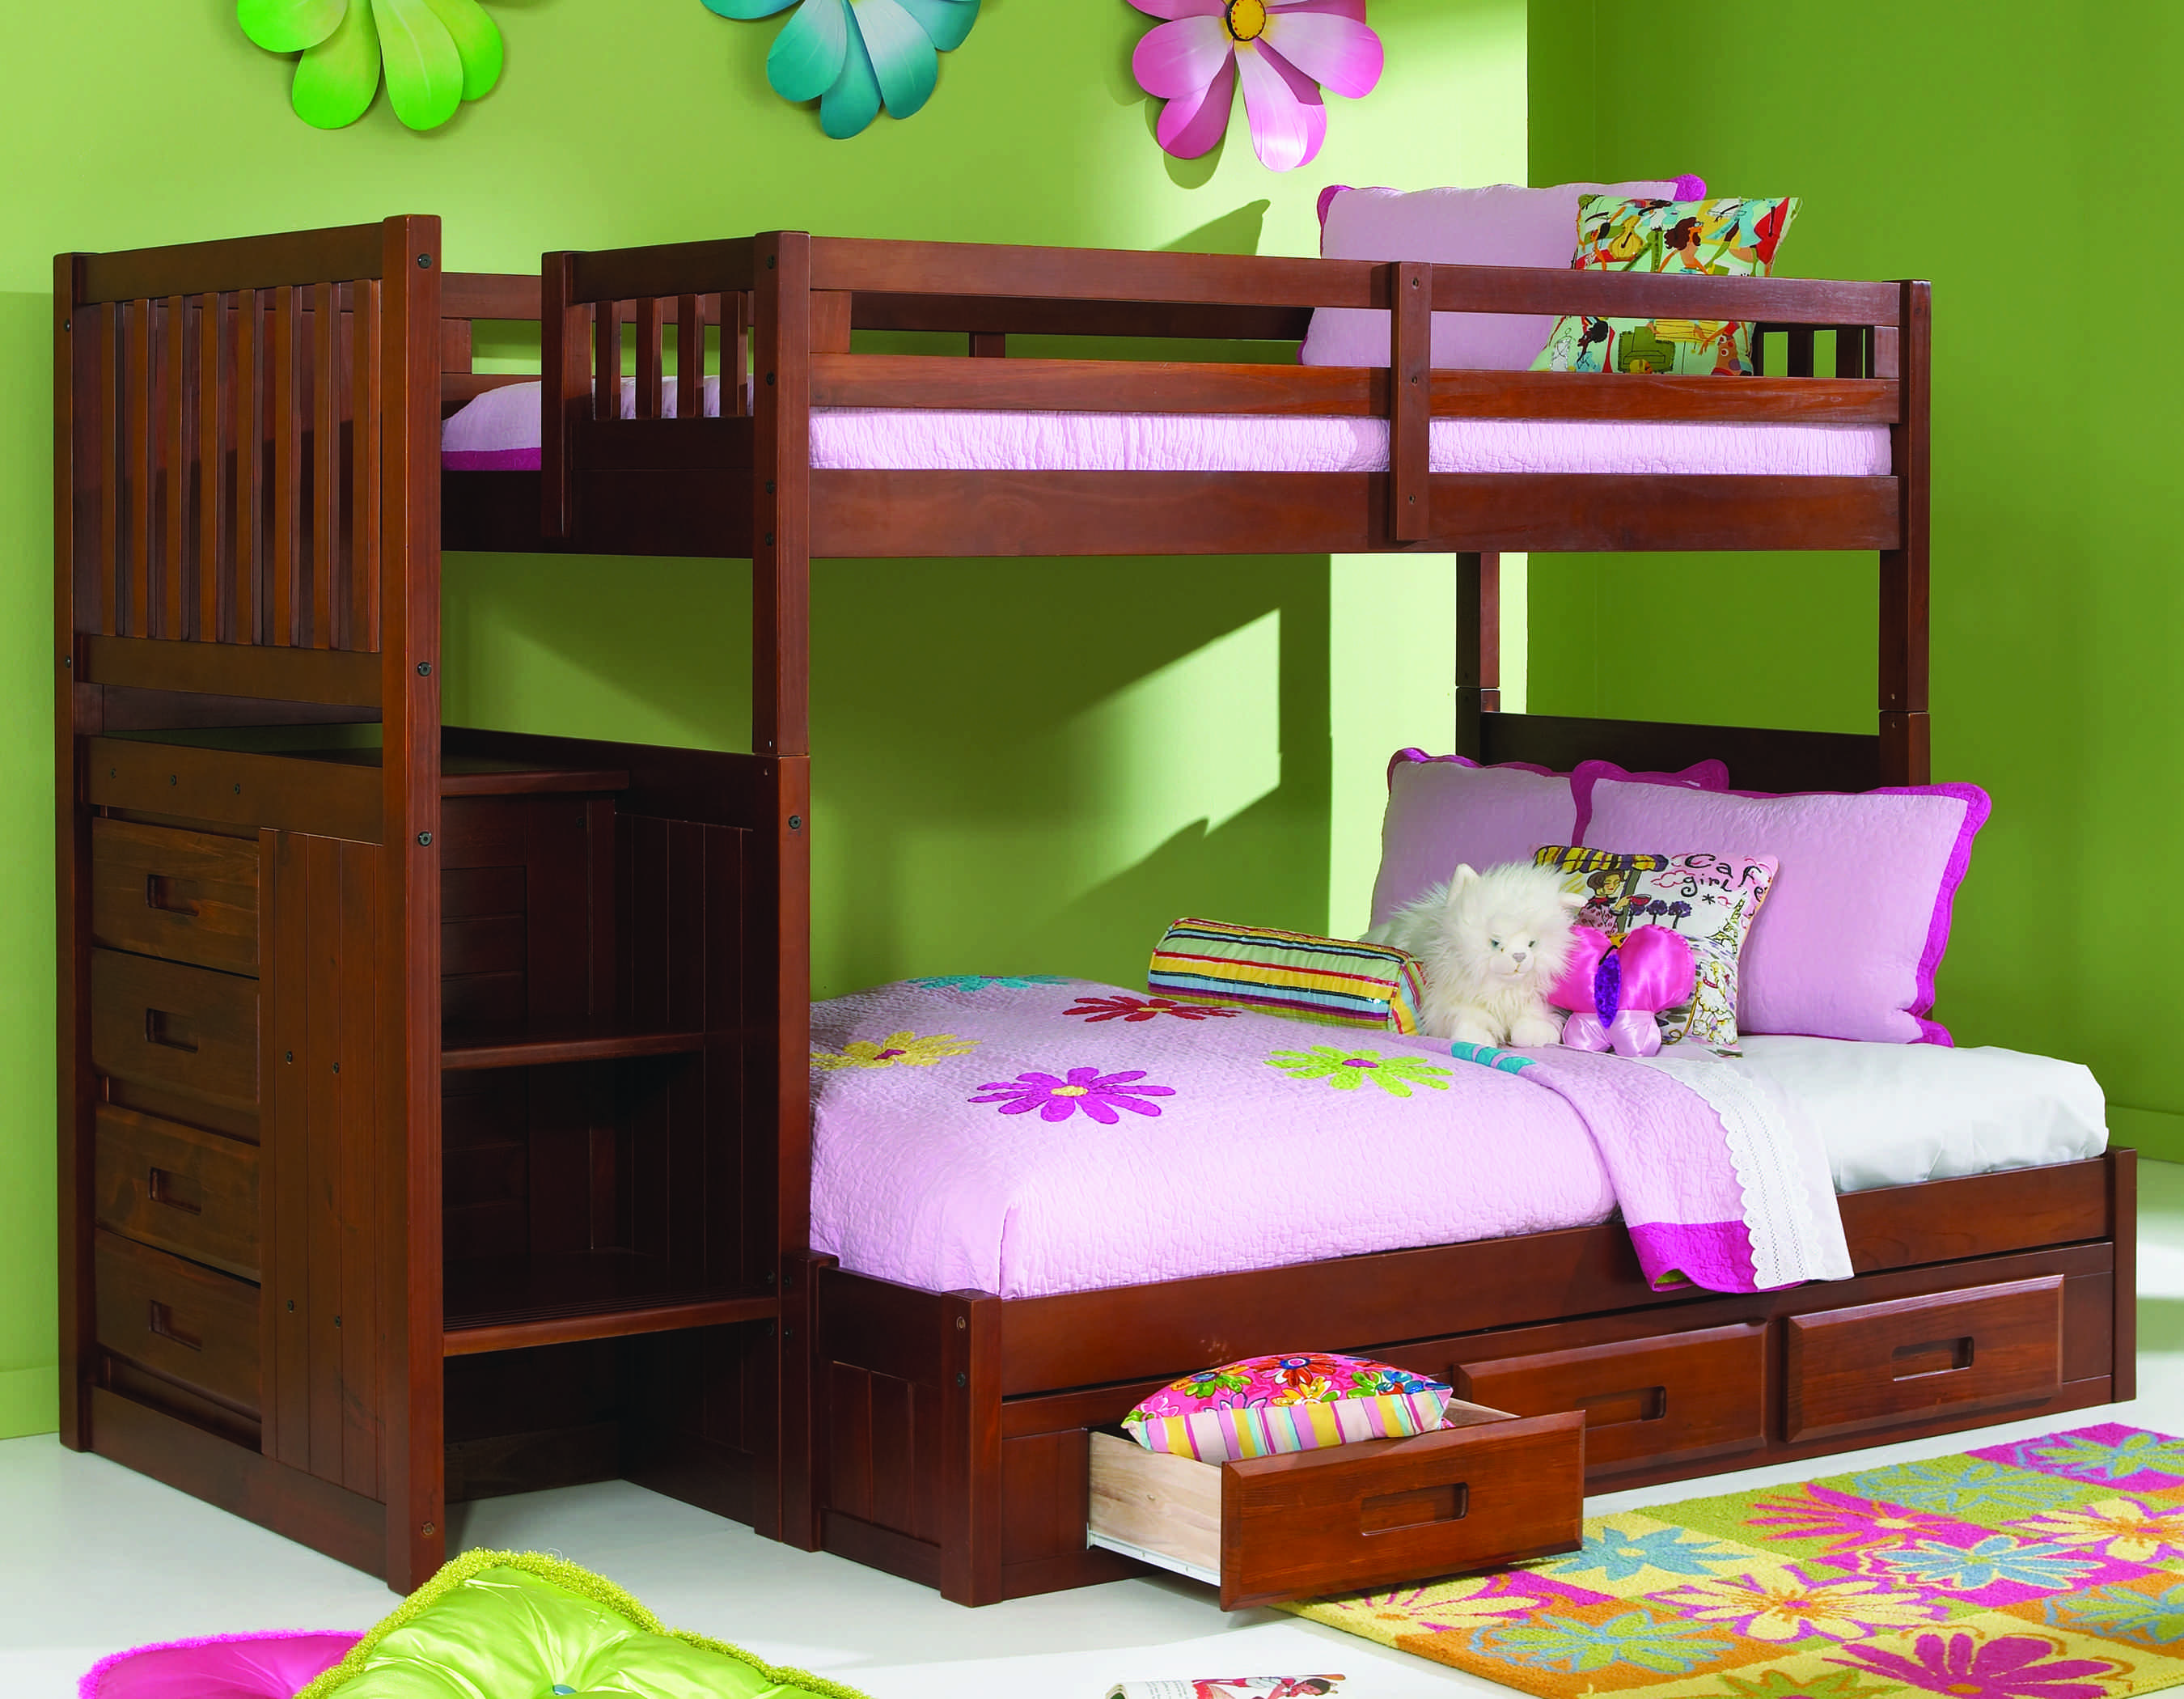 Bedroom Bunk Bed Furniture Sets Kfs, 4 Bed Bunk Bed